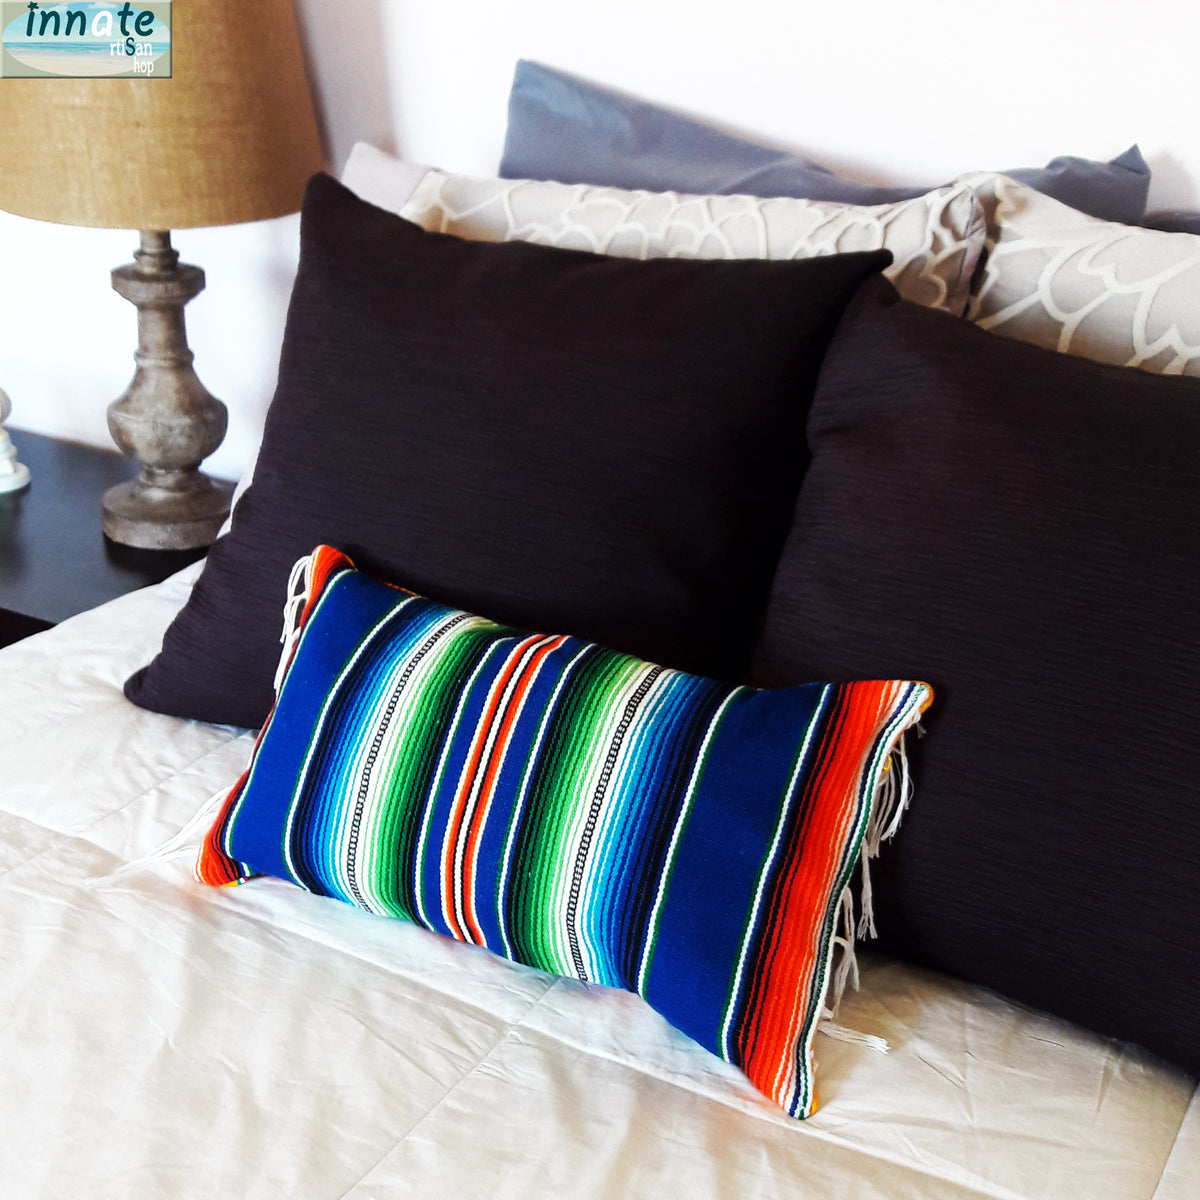 serape pillow, lumbar pillow, almohada de sarape, Mexican decor, Mexican pillow, housewarming gift, sarape, serape pillow, throw pillow